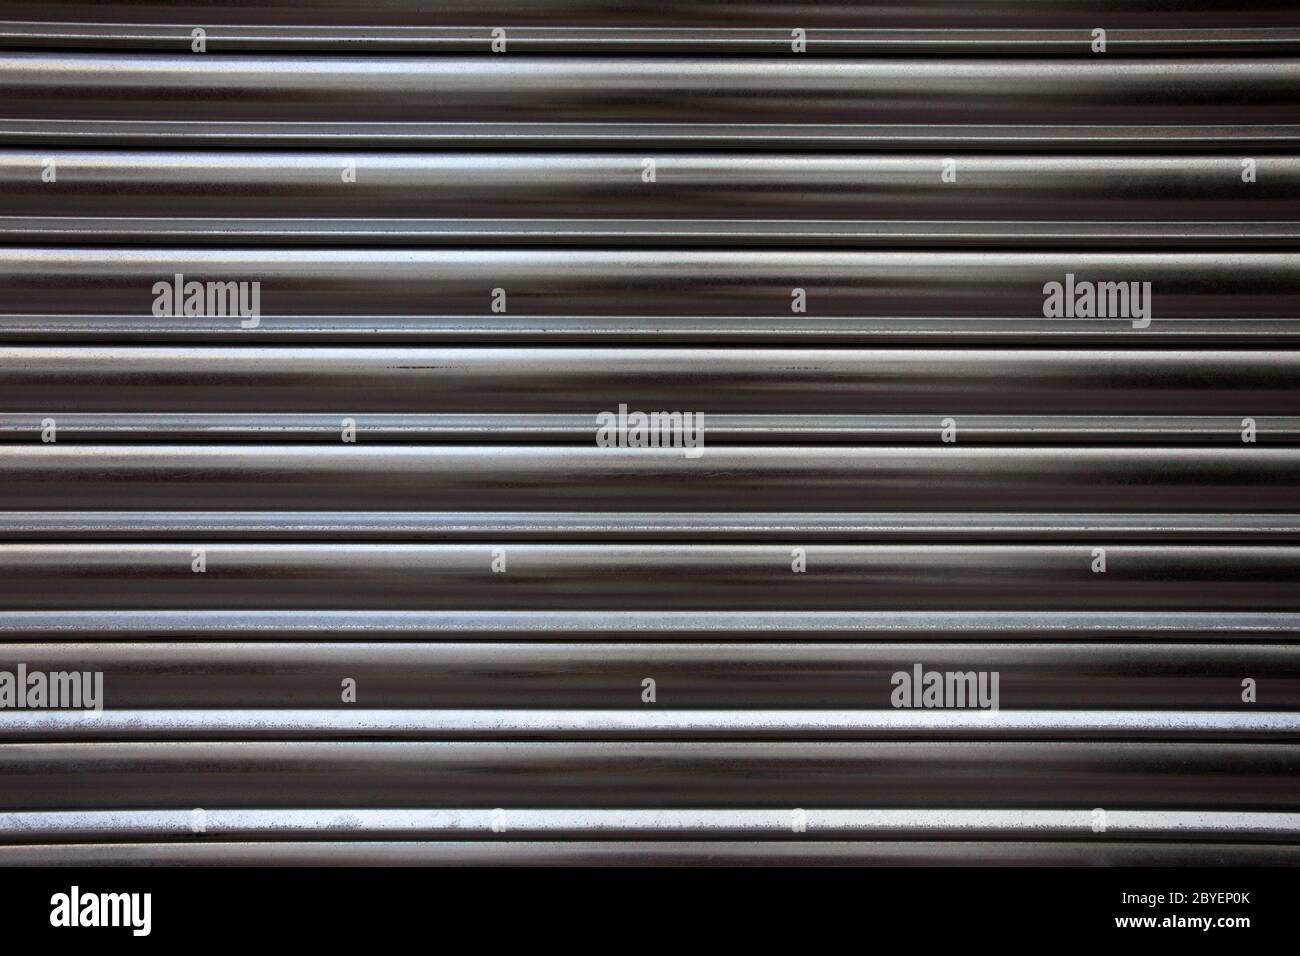 Superficie de metal corrugado Foto de stock